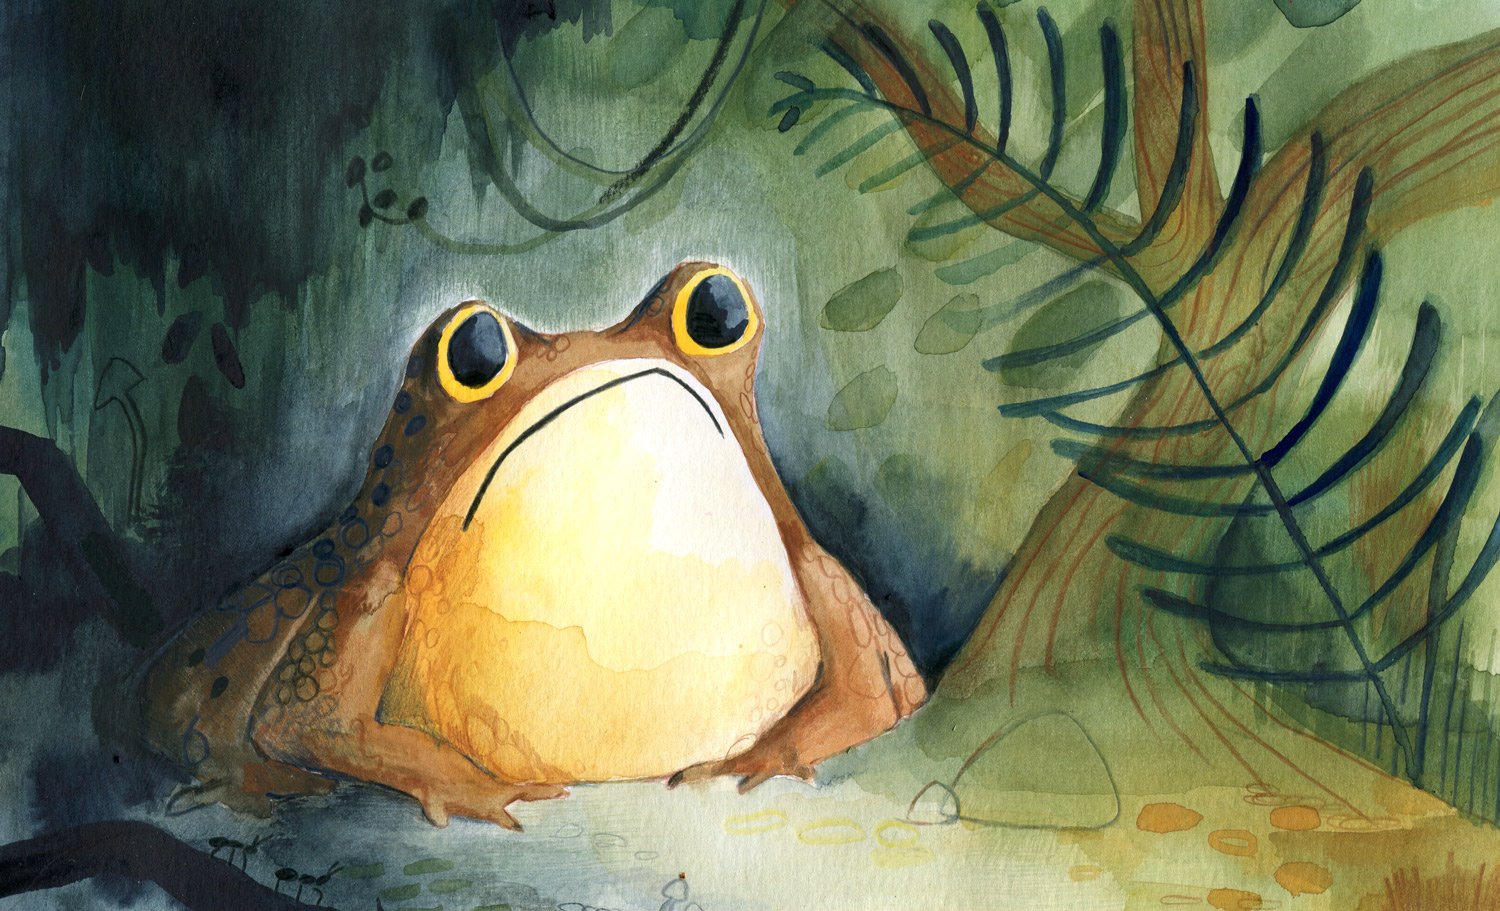 Grumpy-toad_Helen-Kellock-illustration.jpg